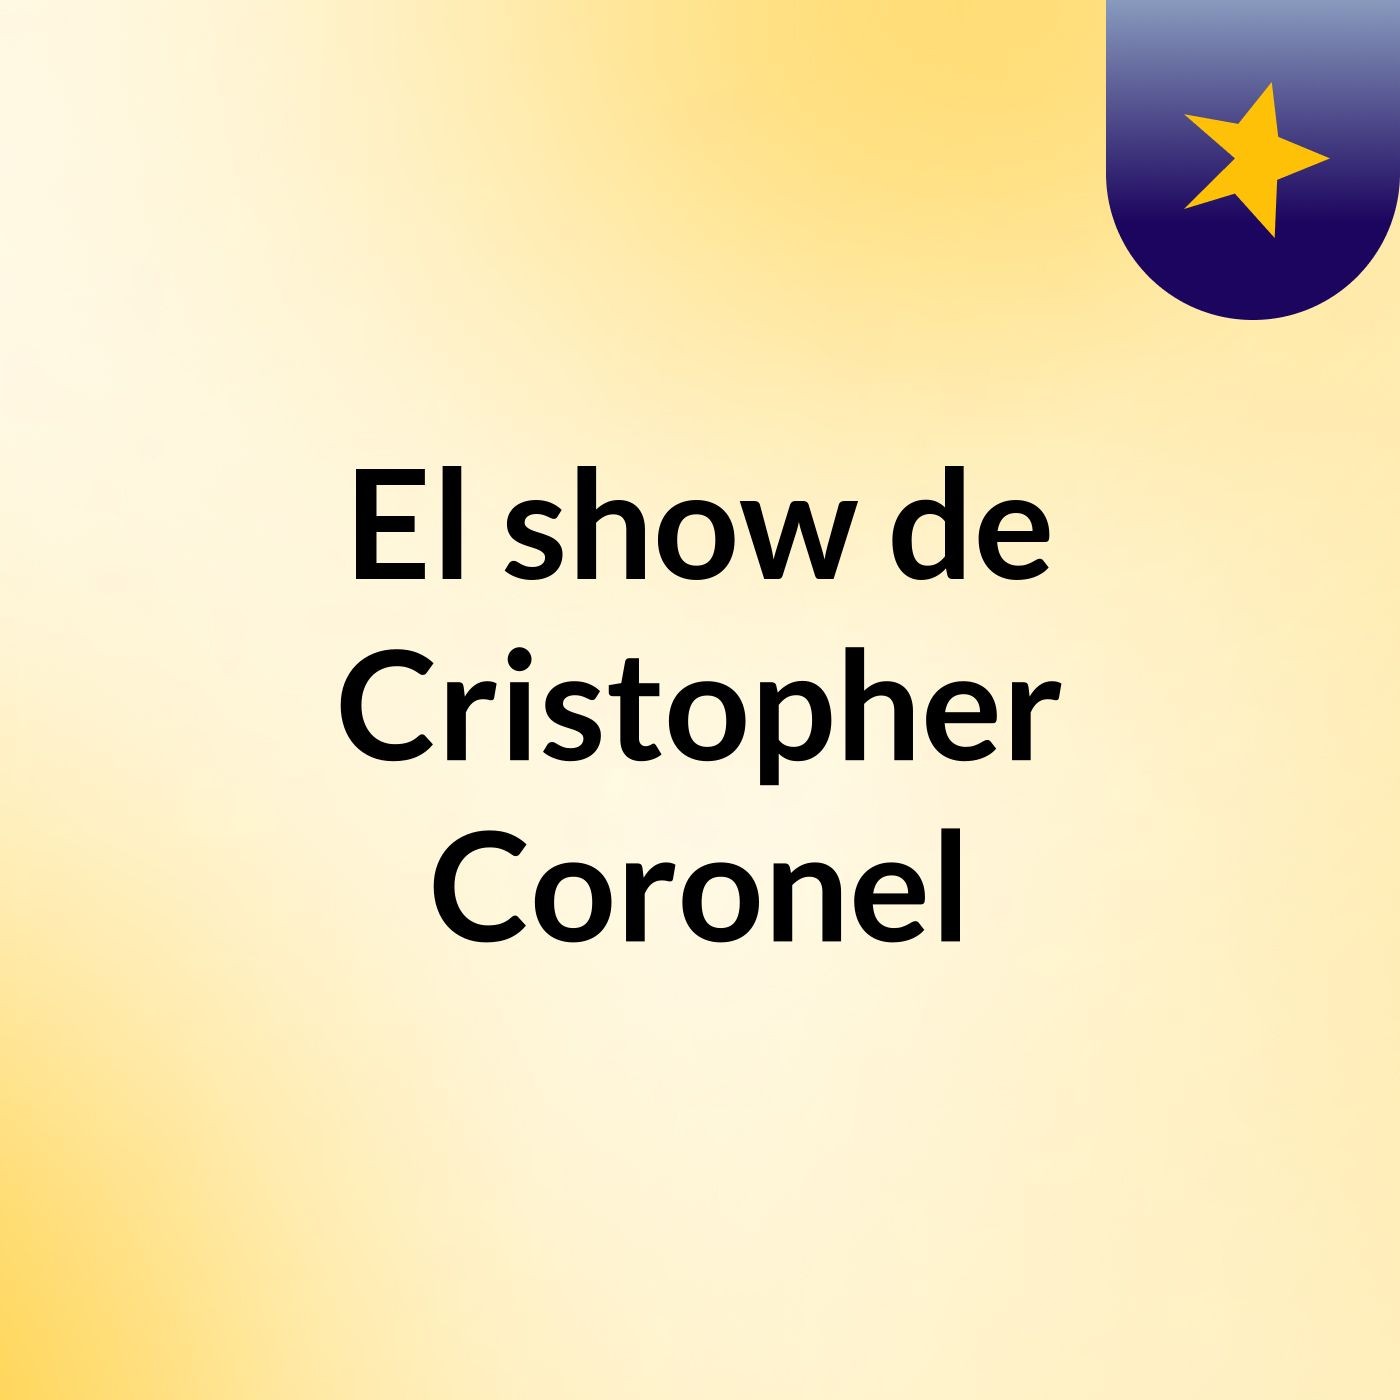 Episodio 2 - El show de Cristopher Coronel